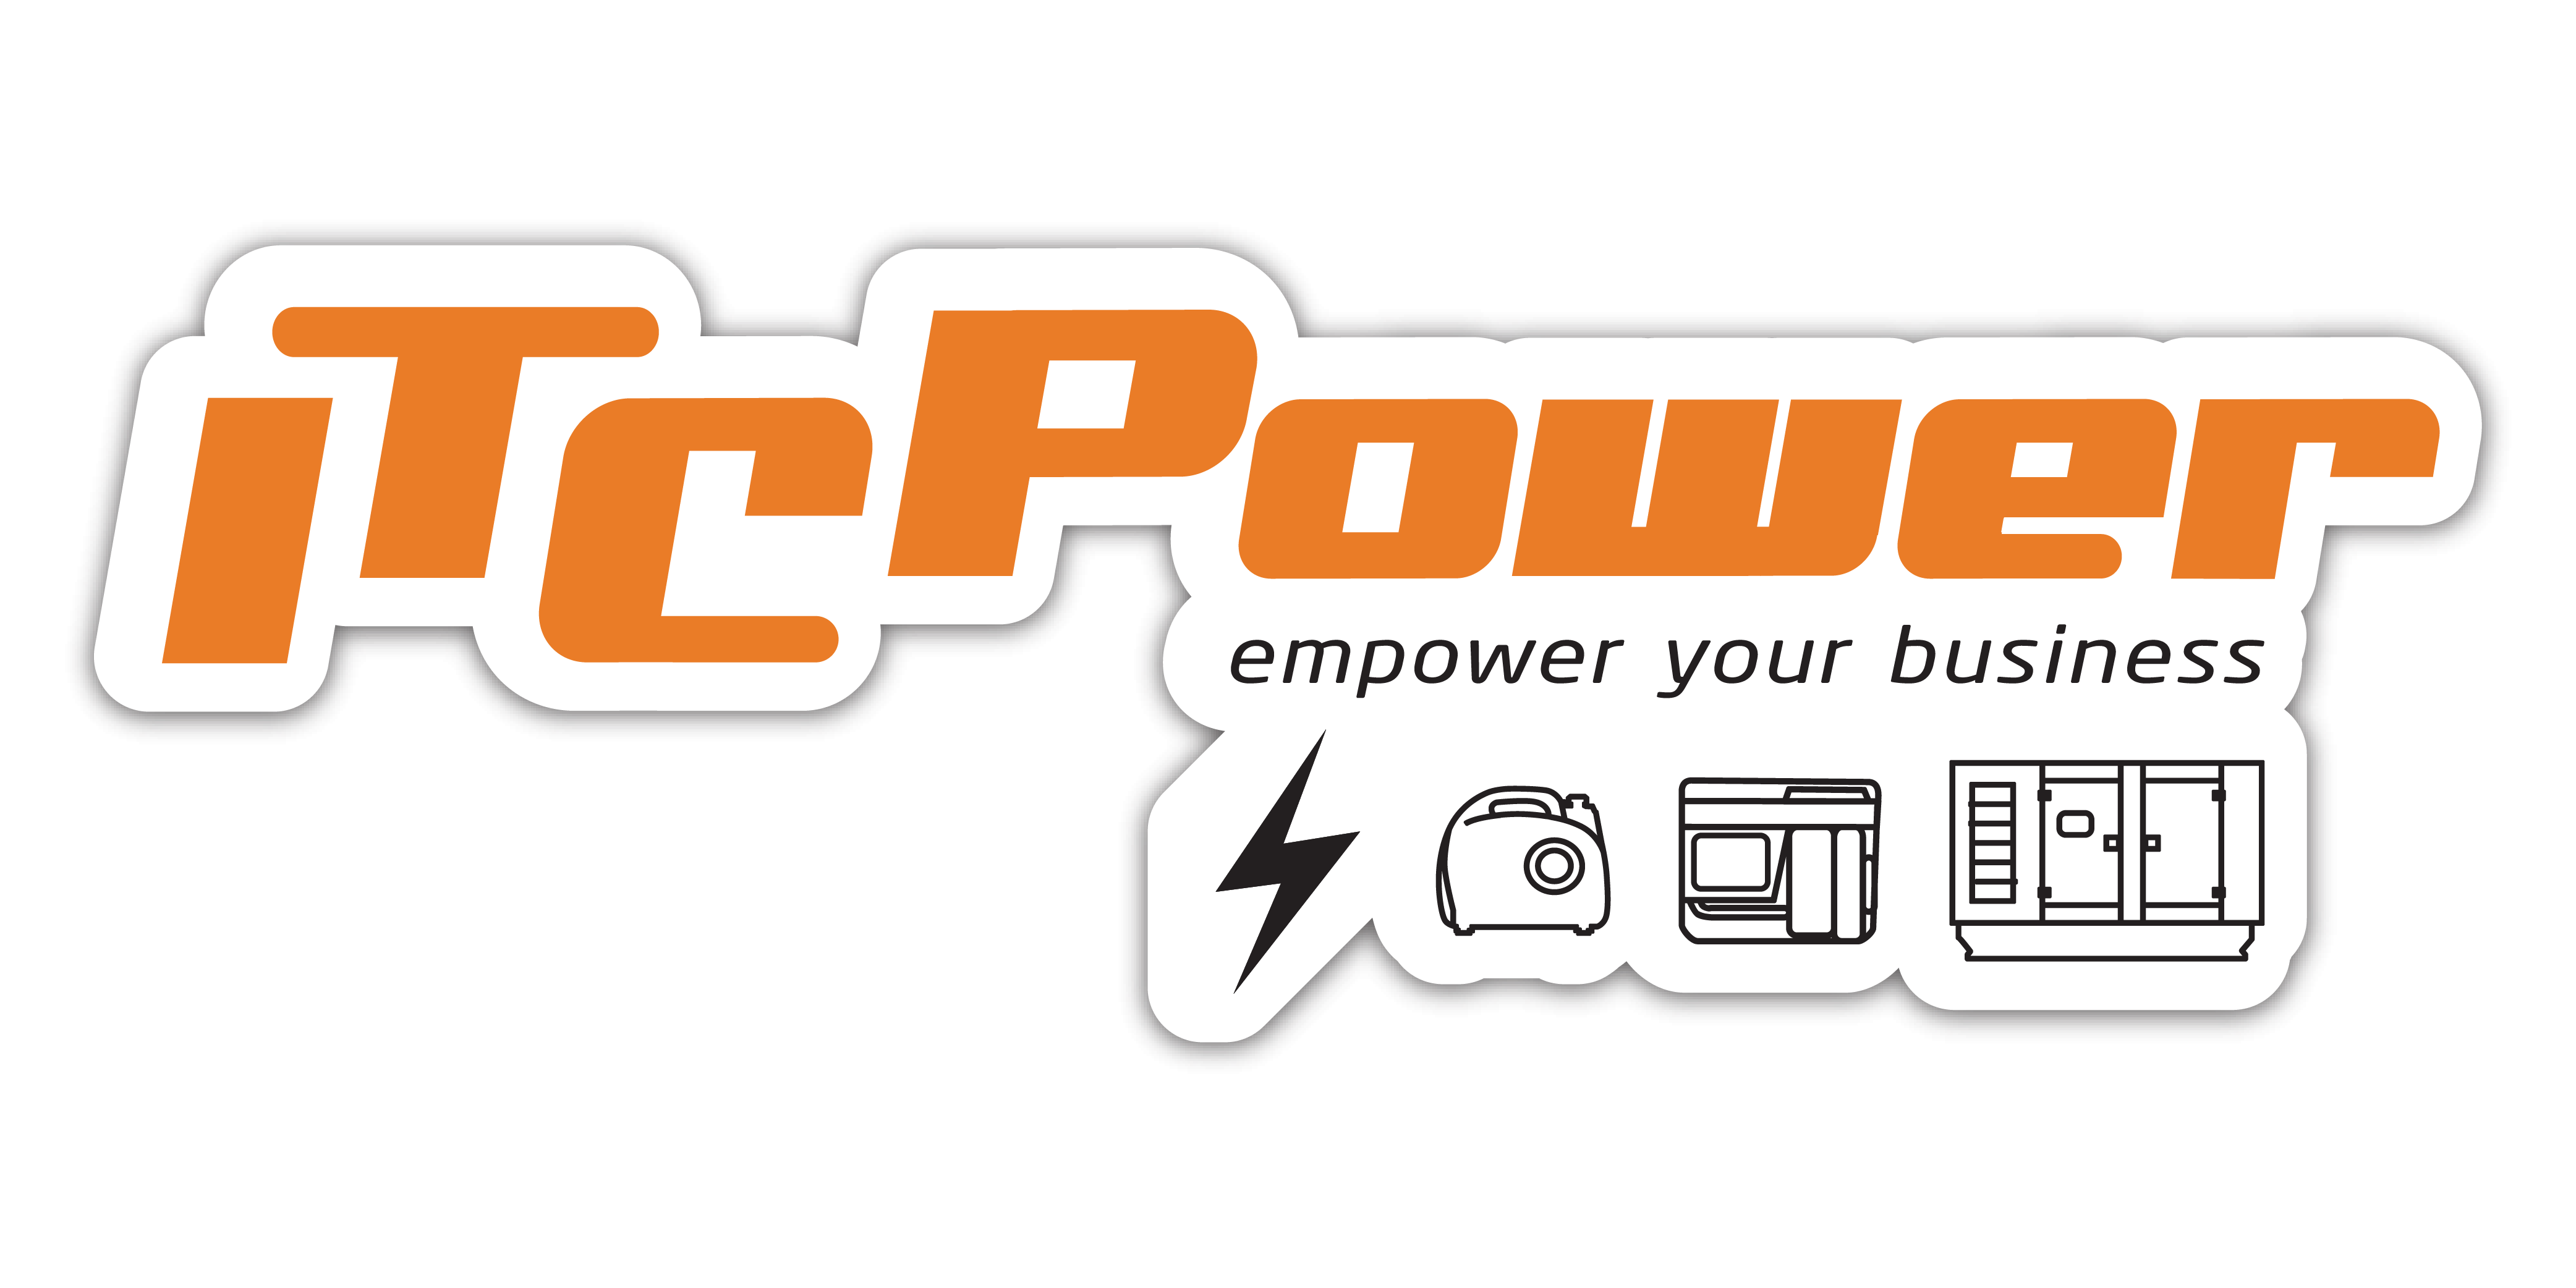 www.generadoritcpower.com